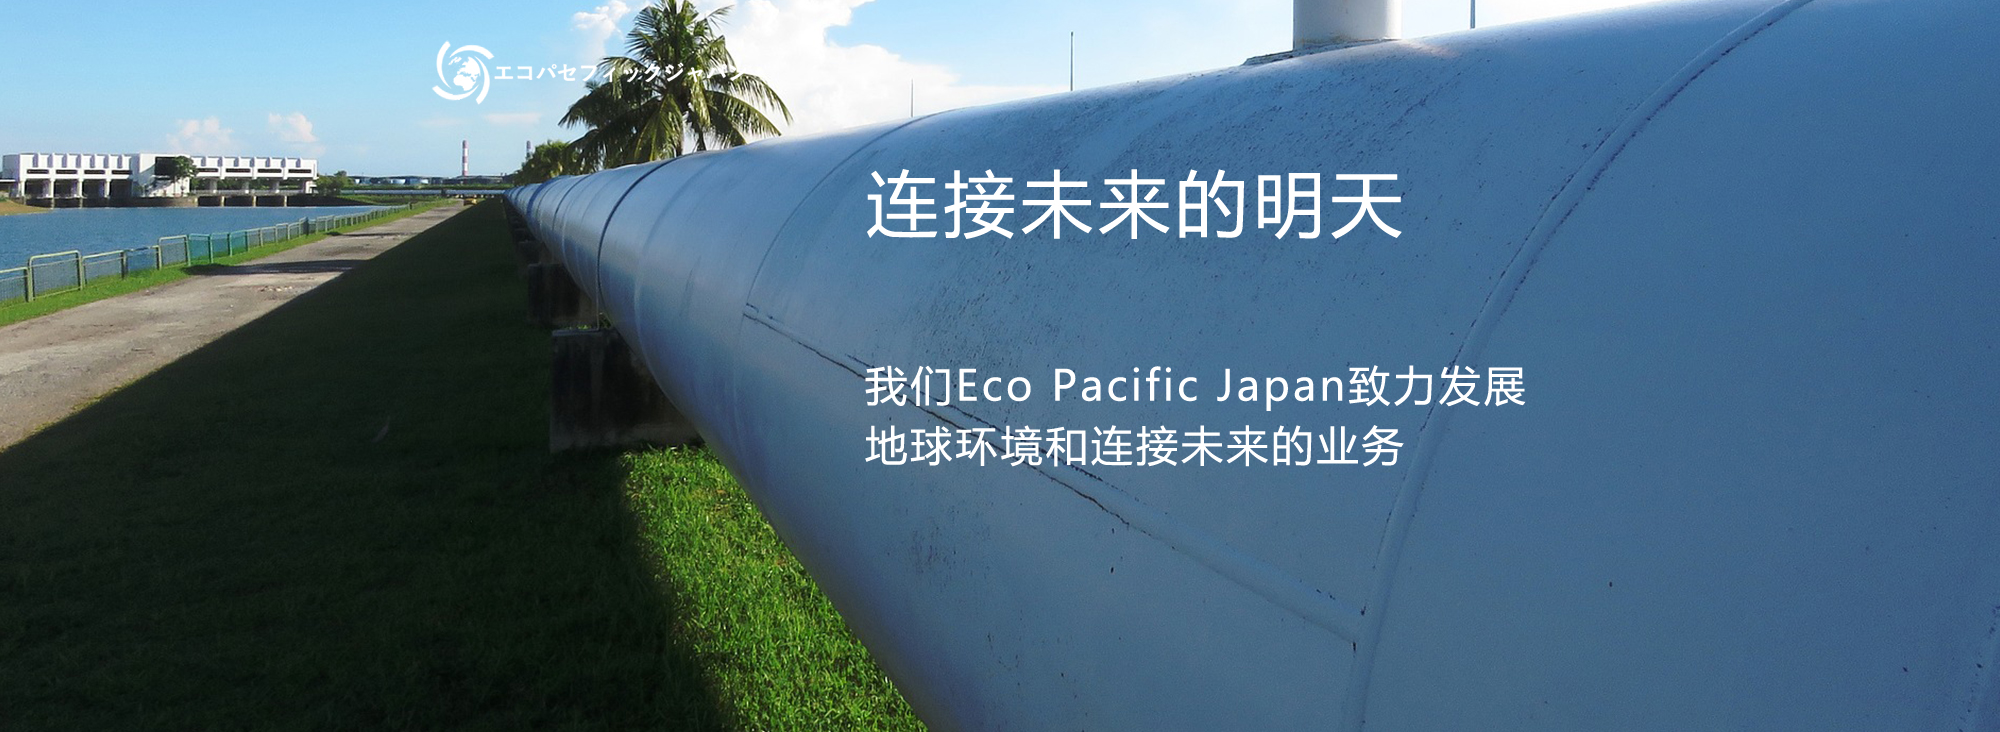 私達エコパセフィックジャパンは地球の環境と未来をつなぐビジネスを展開します。